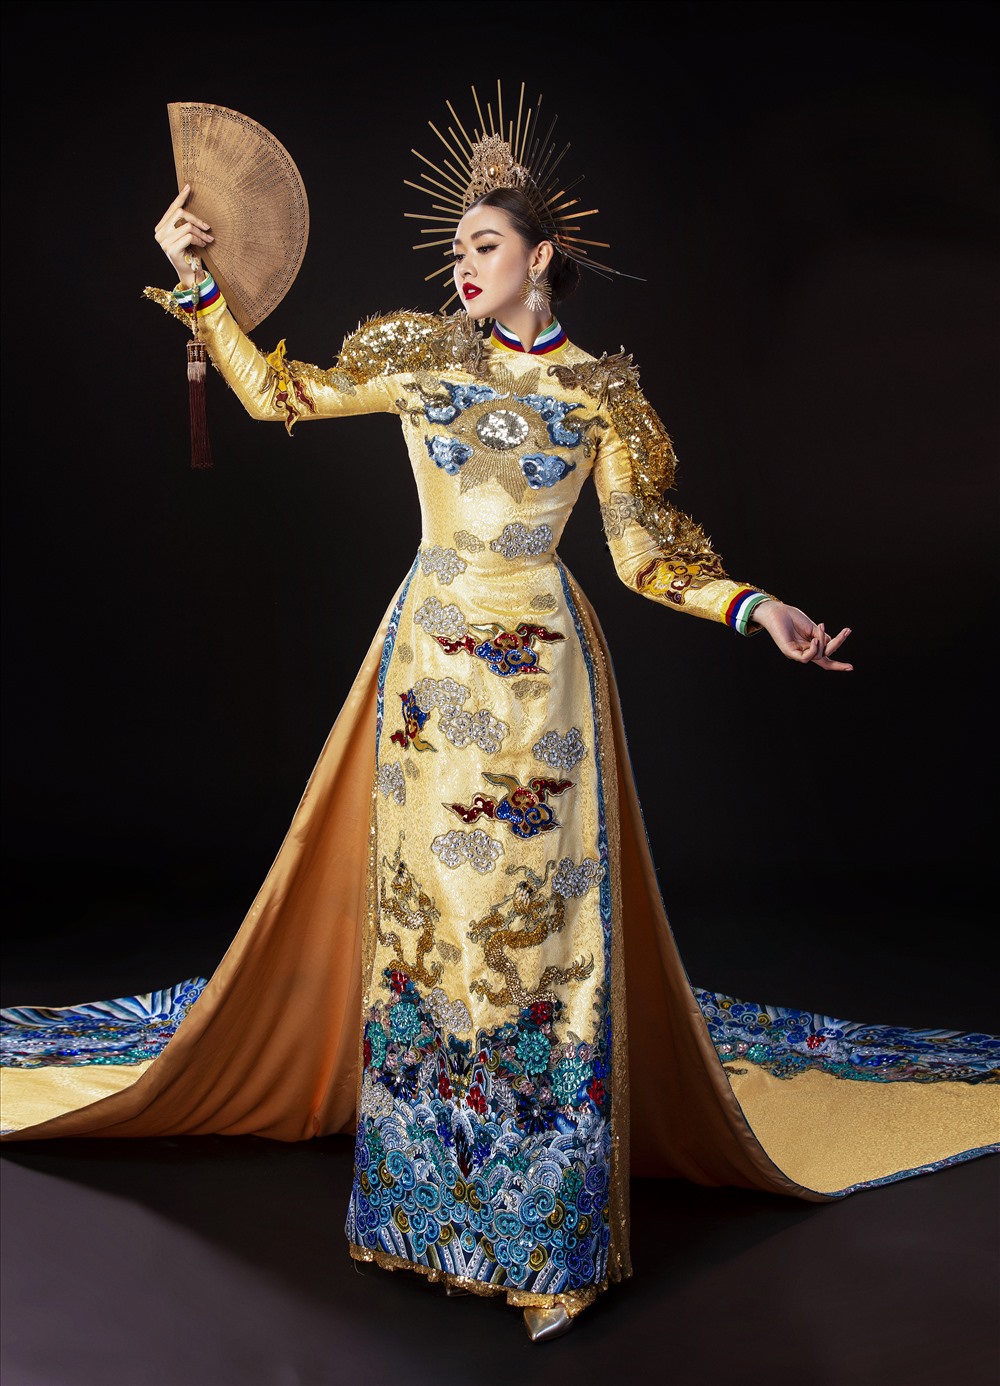 Nhà thiết kế Hồ Hoàng Ca Dao cho biết bộ trang phục này được thiết kế dựa trên hình ảnh chiếc áo dài của người con gái Việt Nam kết hợp cùng những hoa văn, những dải màu mang đậm dấu ấn trang phục cung đình Huế. Ảnh: Lê Thiện Viễn.